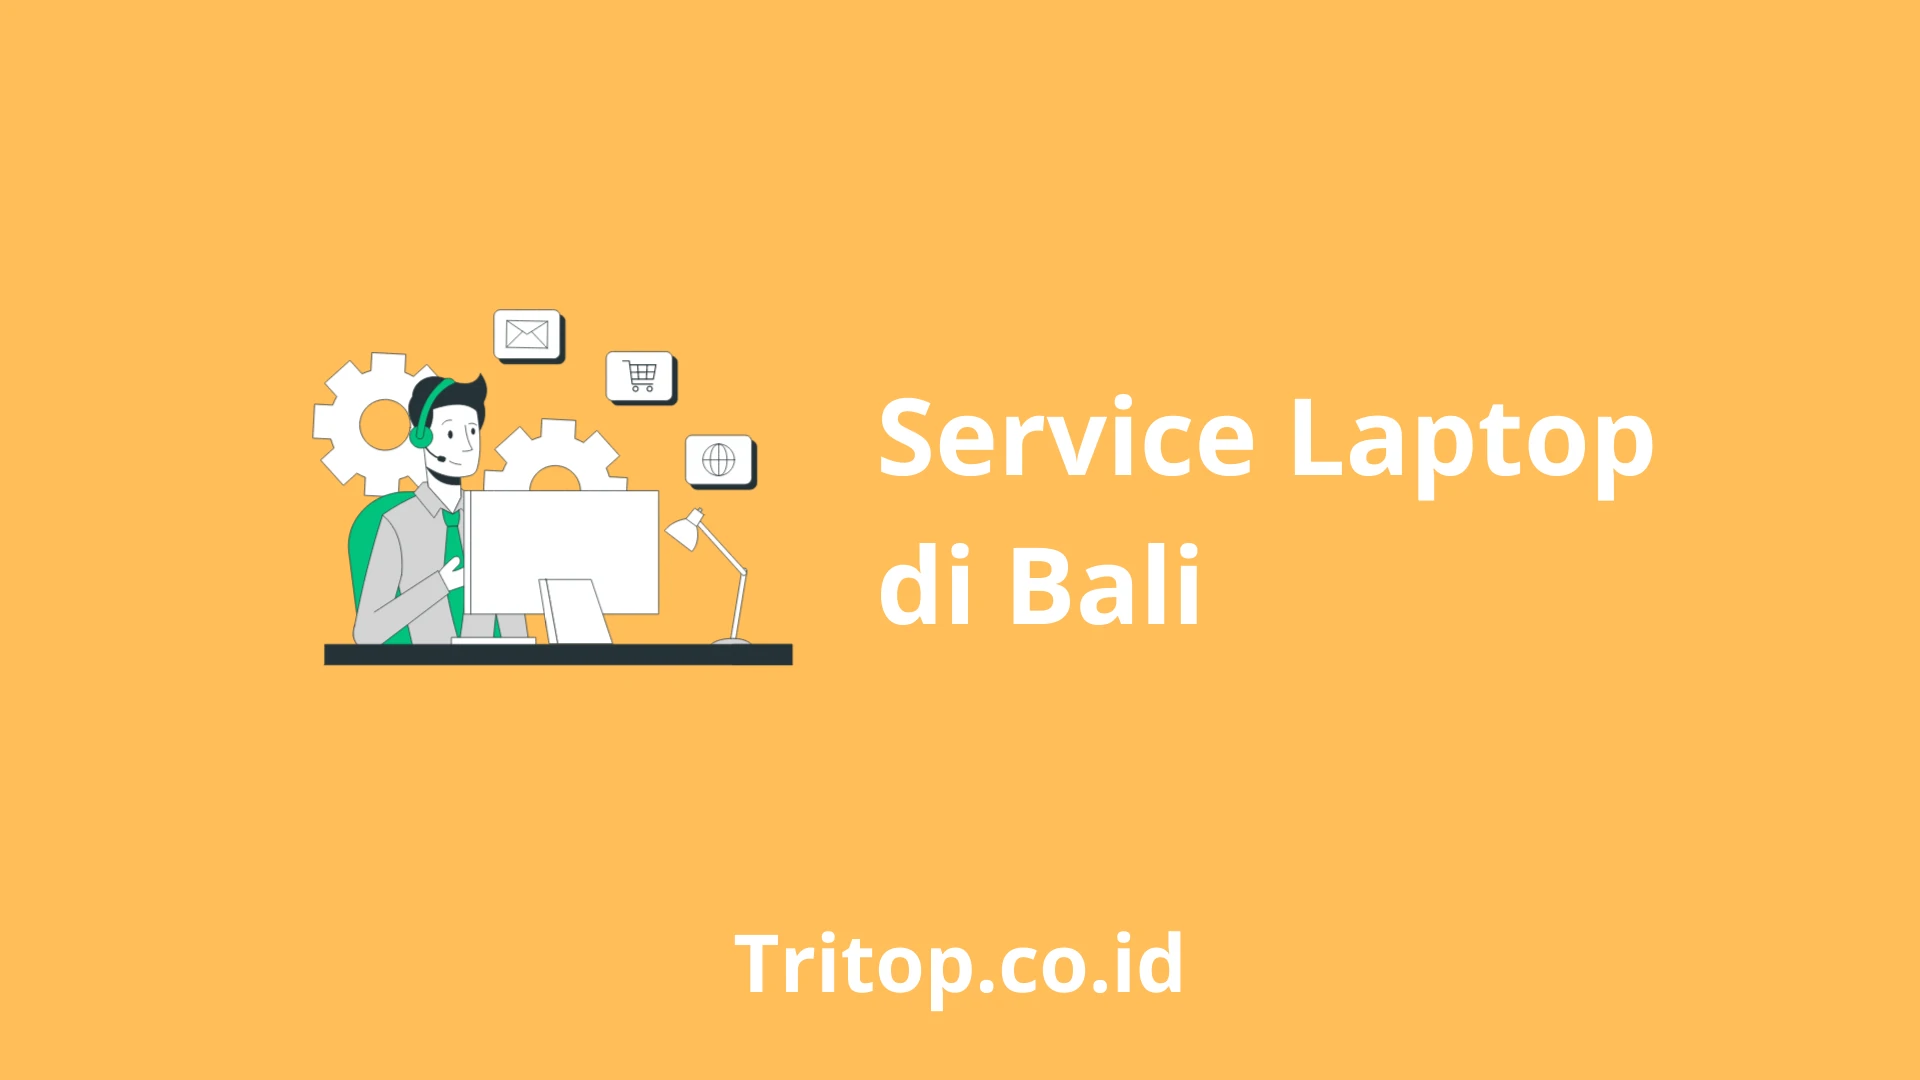 Service Laptop Bali tritop.co.id